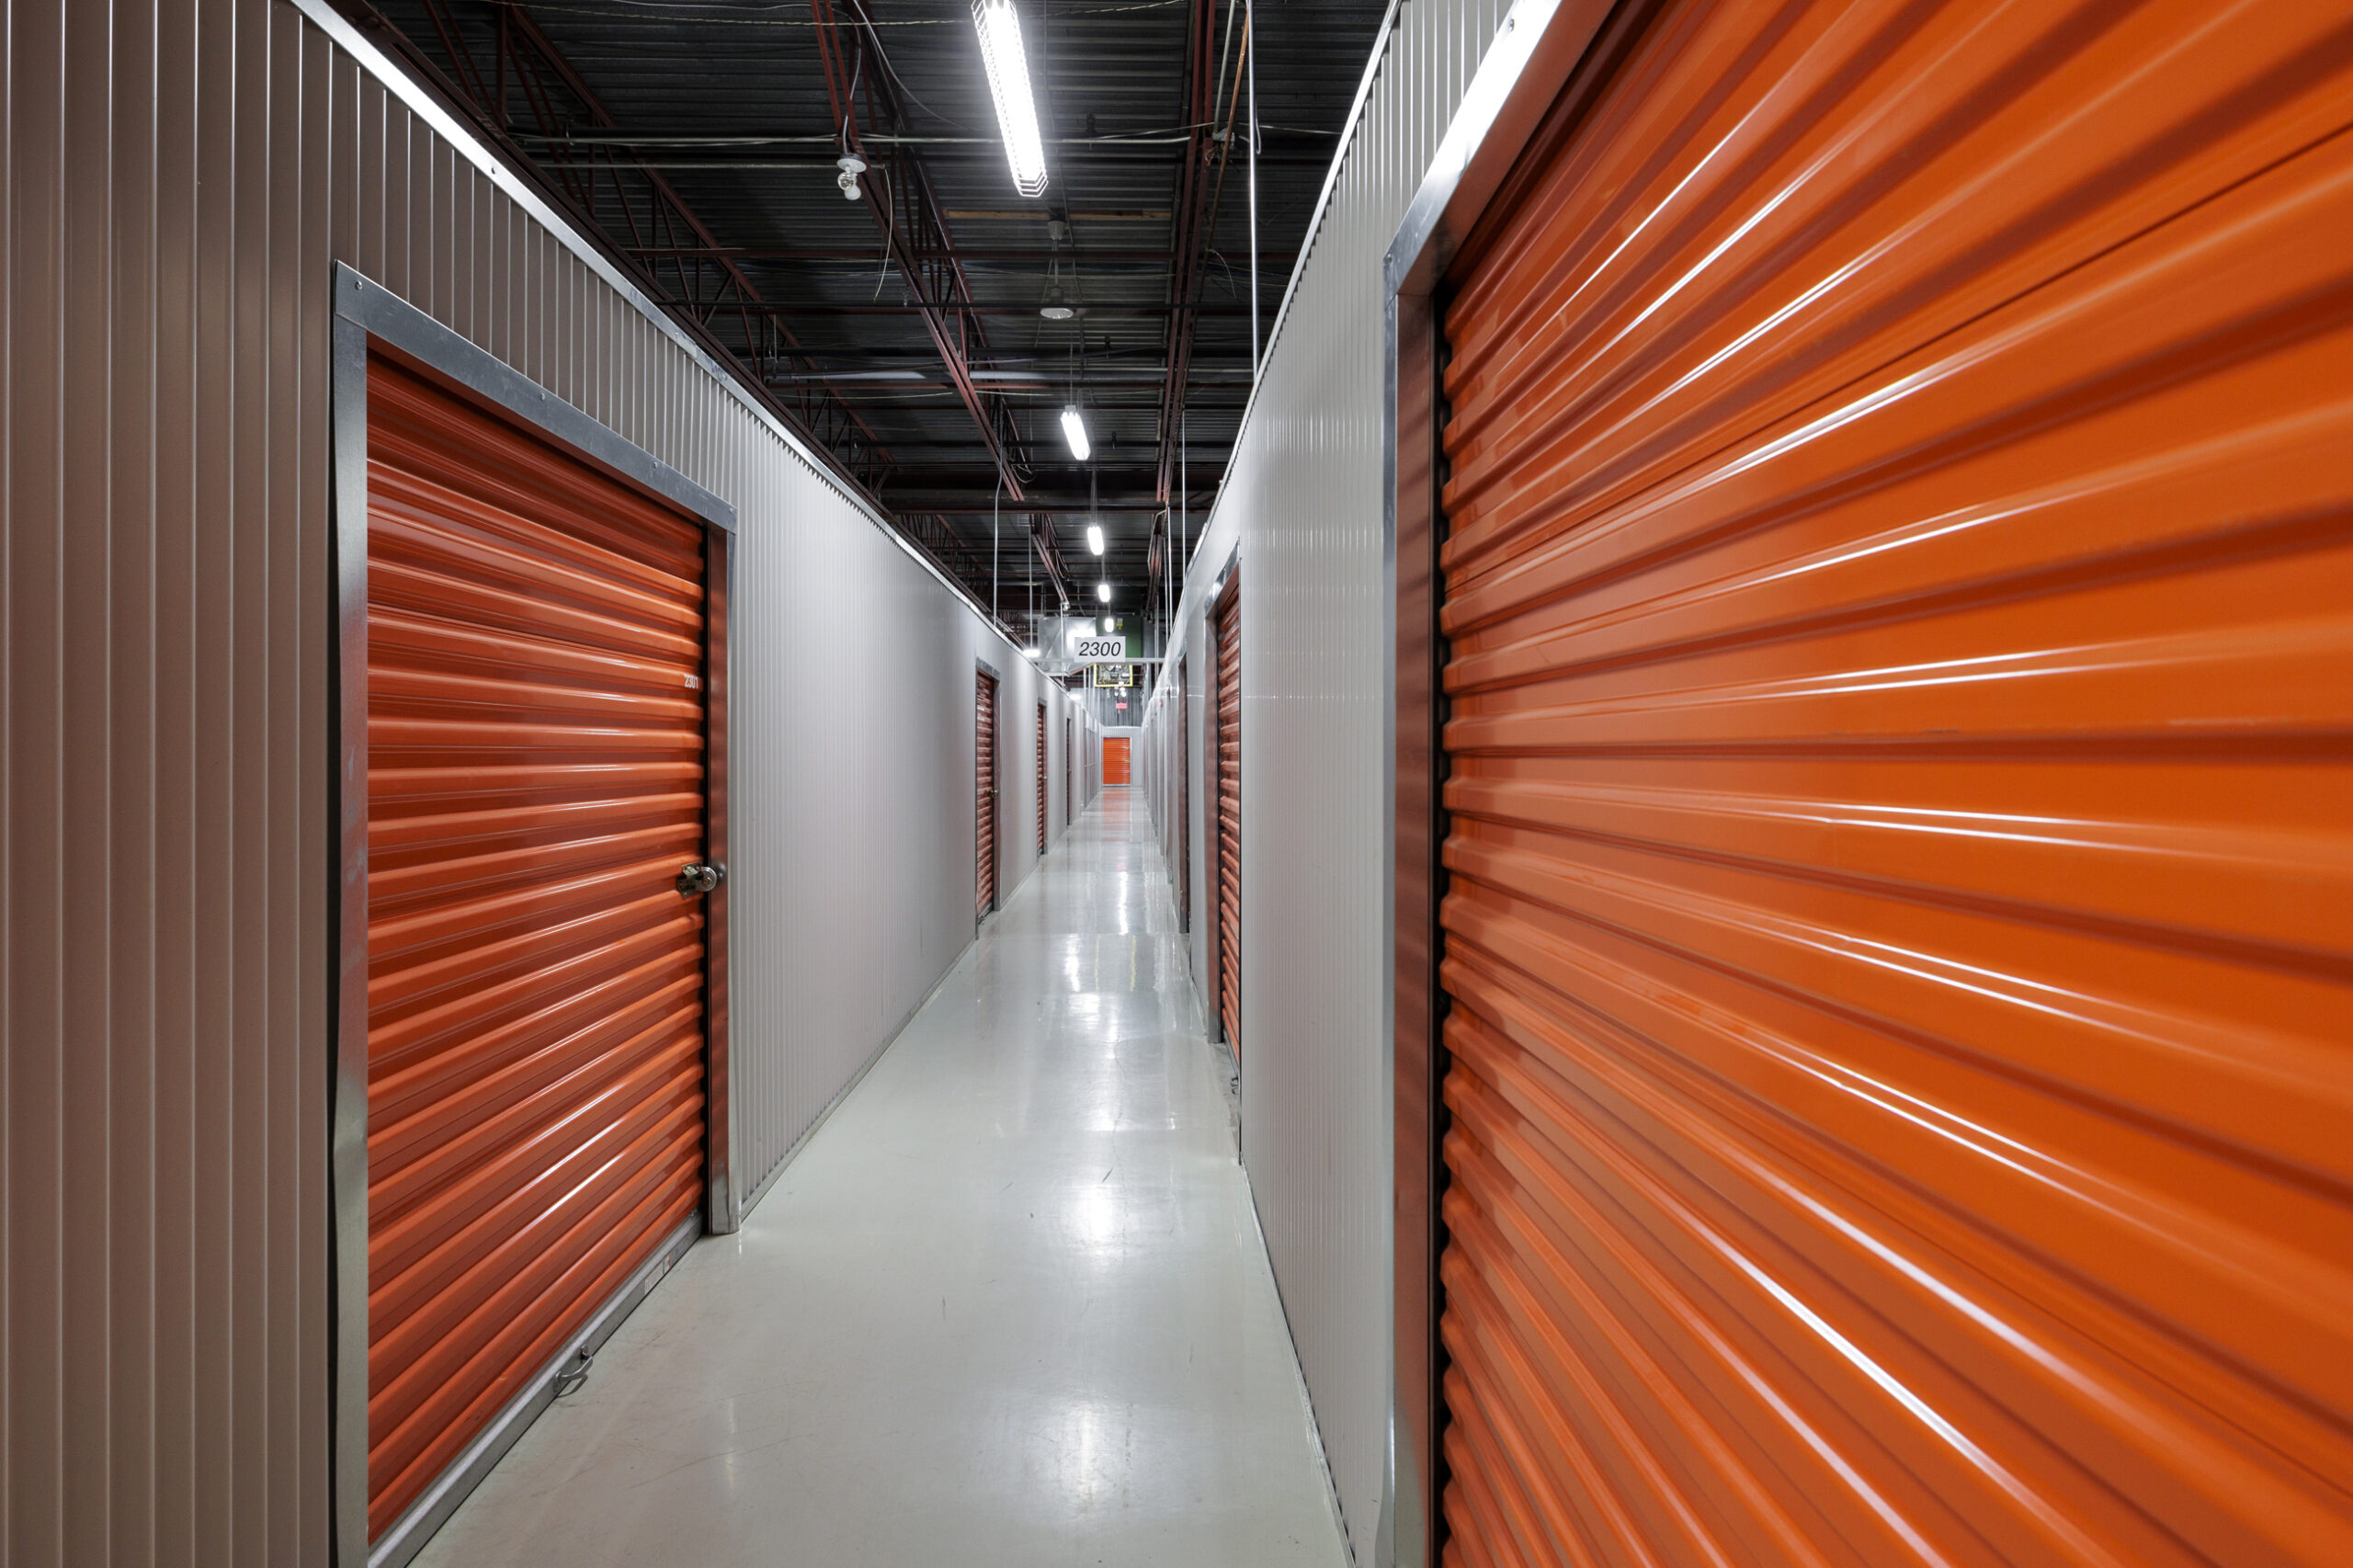 Un grand couloir facilite l’accès aux mini-entrepôts. Les portes des entrepôts sont oranges et le format est proportionnel à la grandeur de l’entrepôt. Plus l’entrepôt est grand, plus la porte sera grande pour faciliter l’accès.